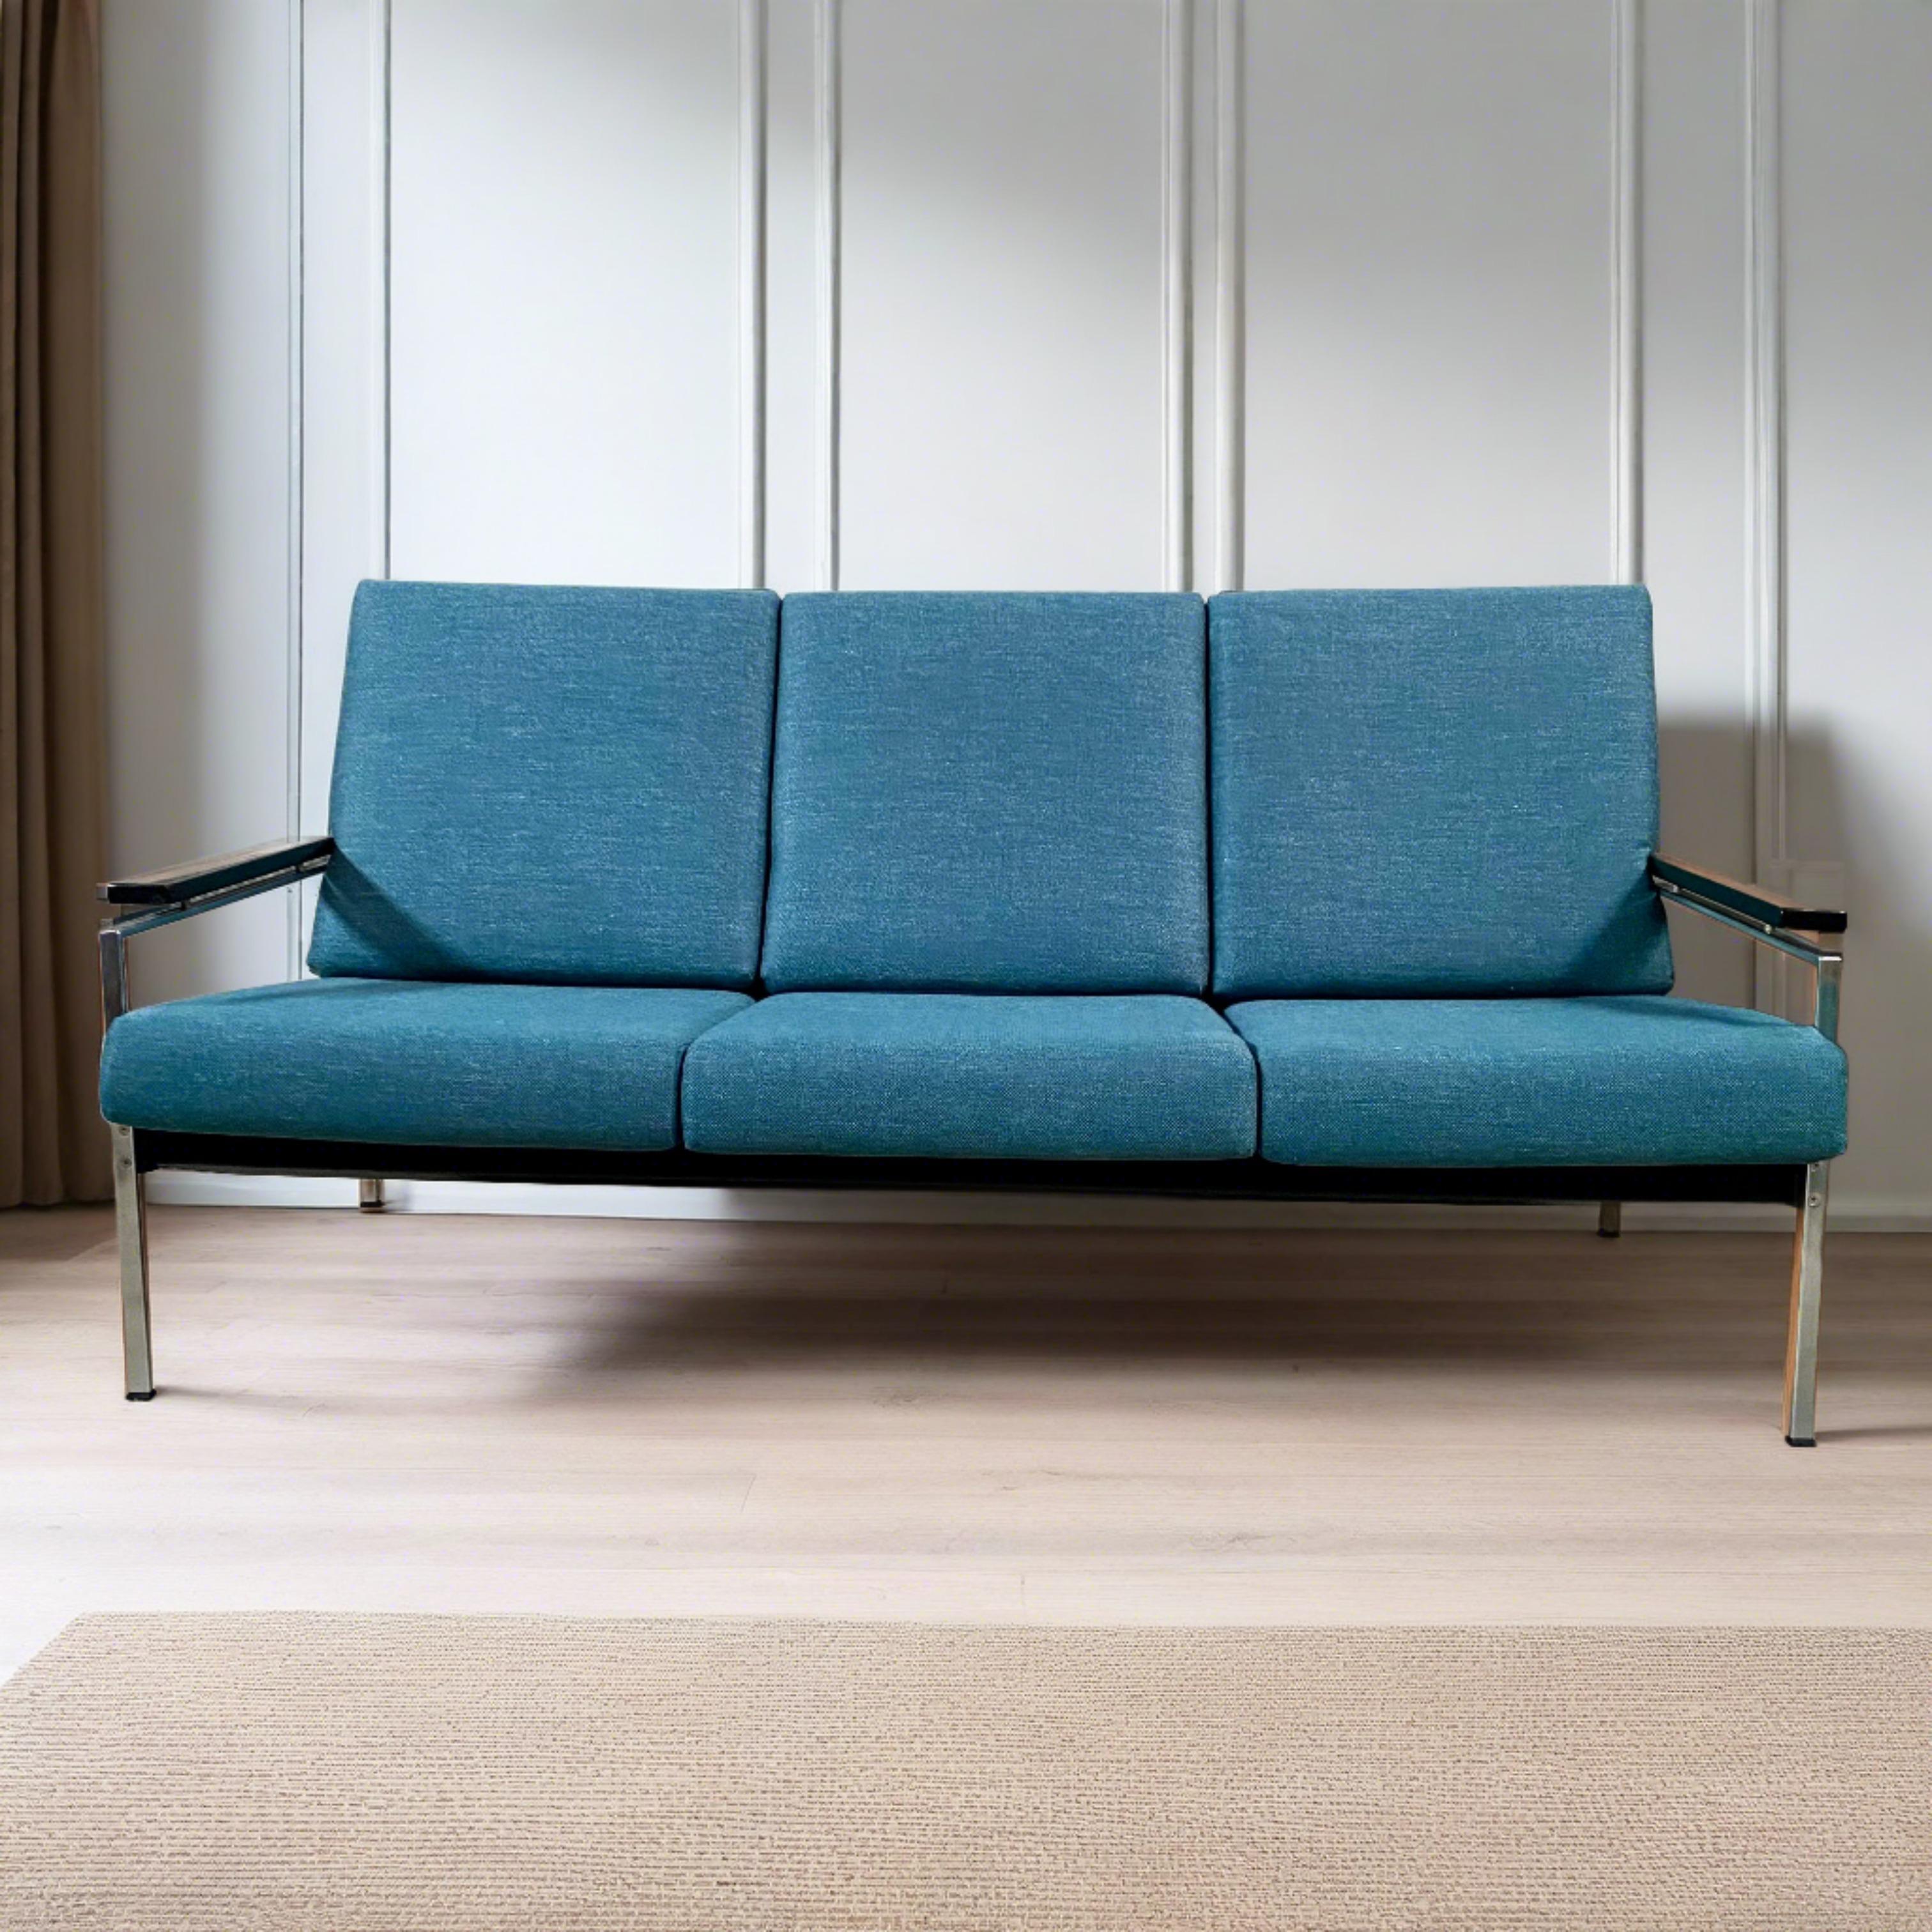 Wir präsentieren das Rob Parry 3-Sitzer-Sofa von Gelderland aus der Mitte des Jahrhunderts: Ein zeitloses niederländisches Design-Meisterwerk

Erhöhen Sie Ihren Wohnraum mit dem Inbegriff der Raffinesse aus der Mitte des Jahrhunderts - dem Rob Parry